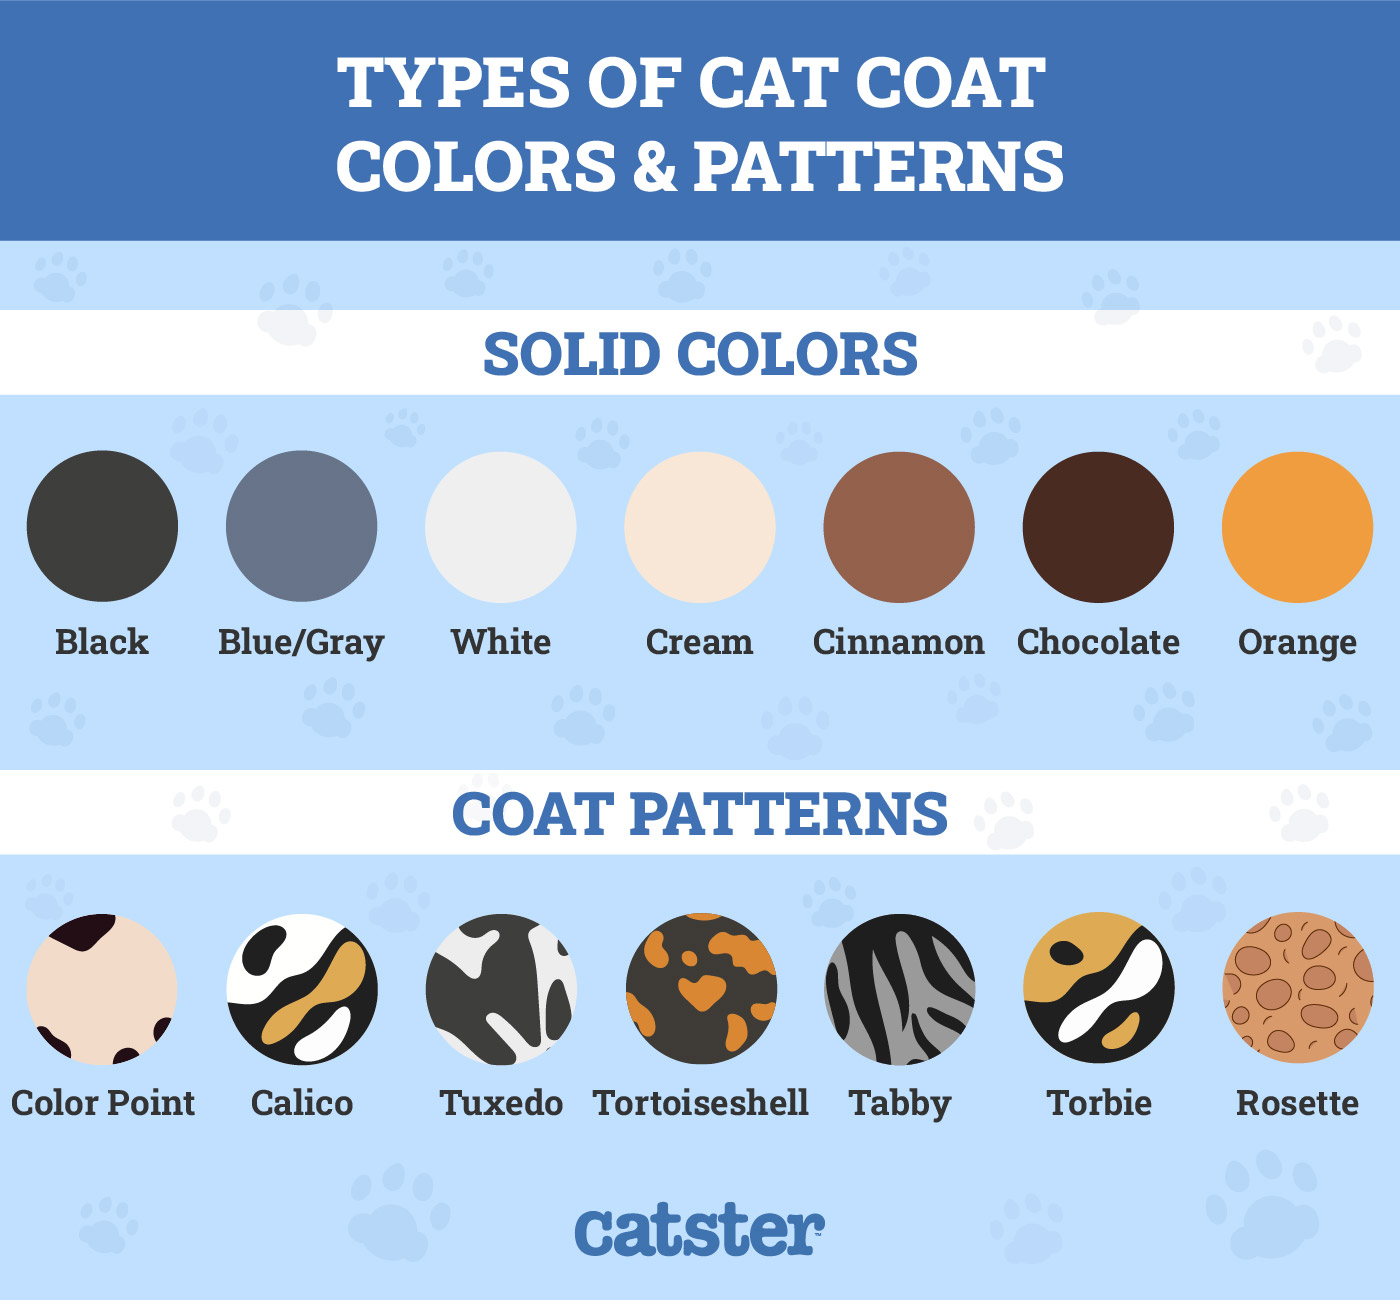 Cat coat colors